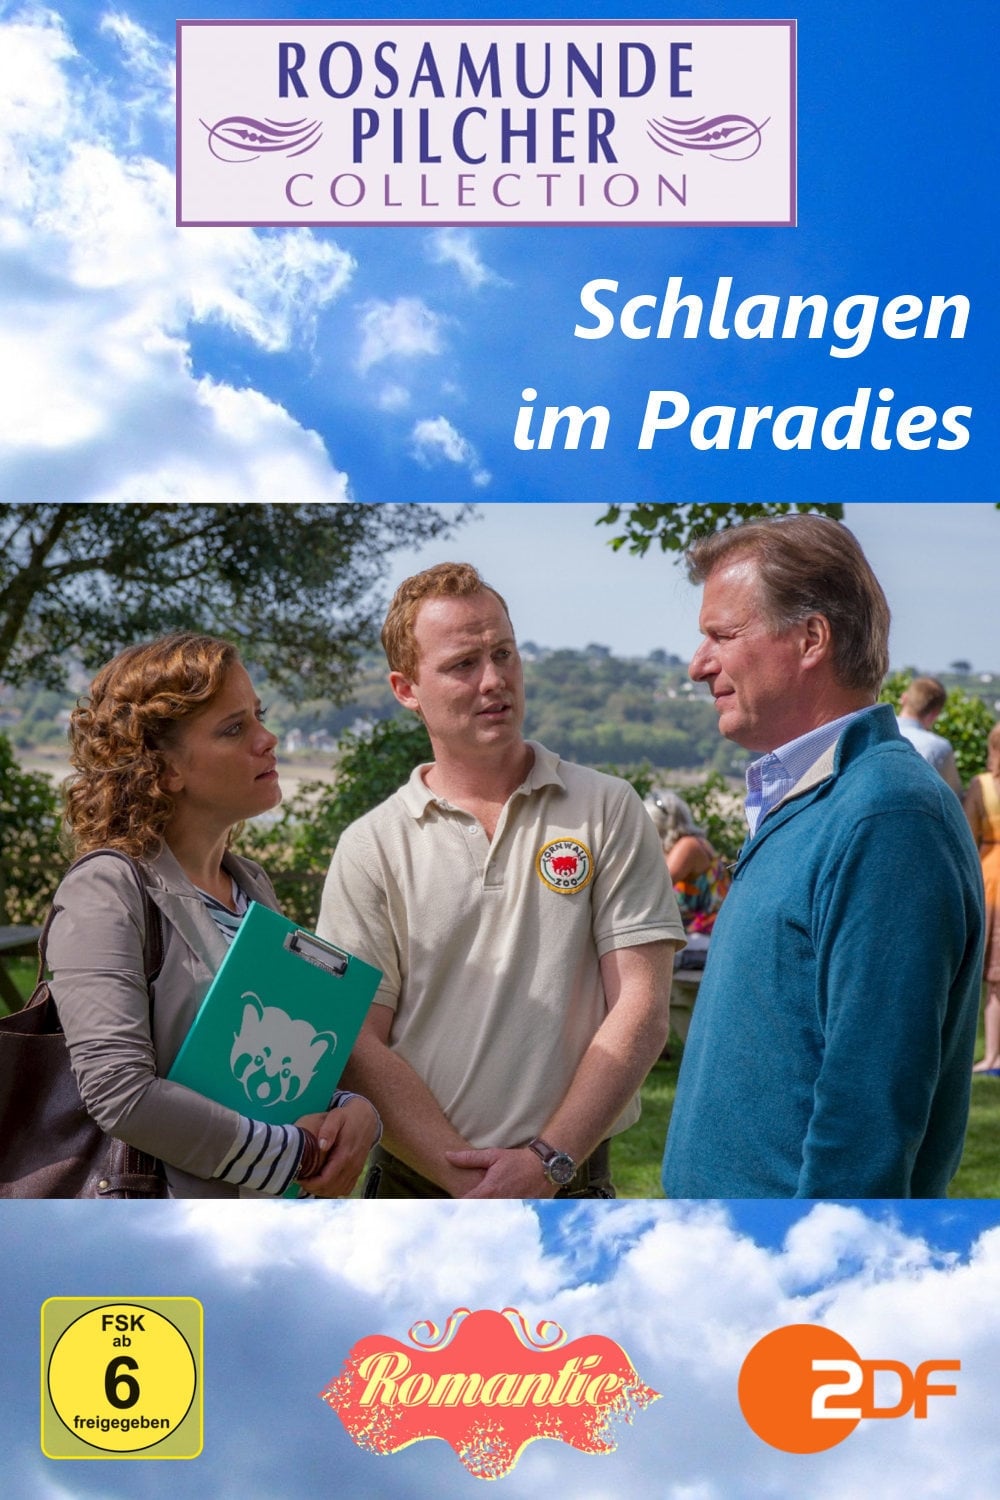 Rosamunde Pilcher: Schlangen im Paradies (2013)